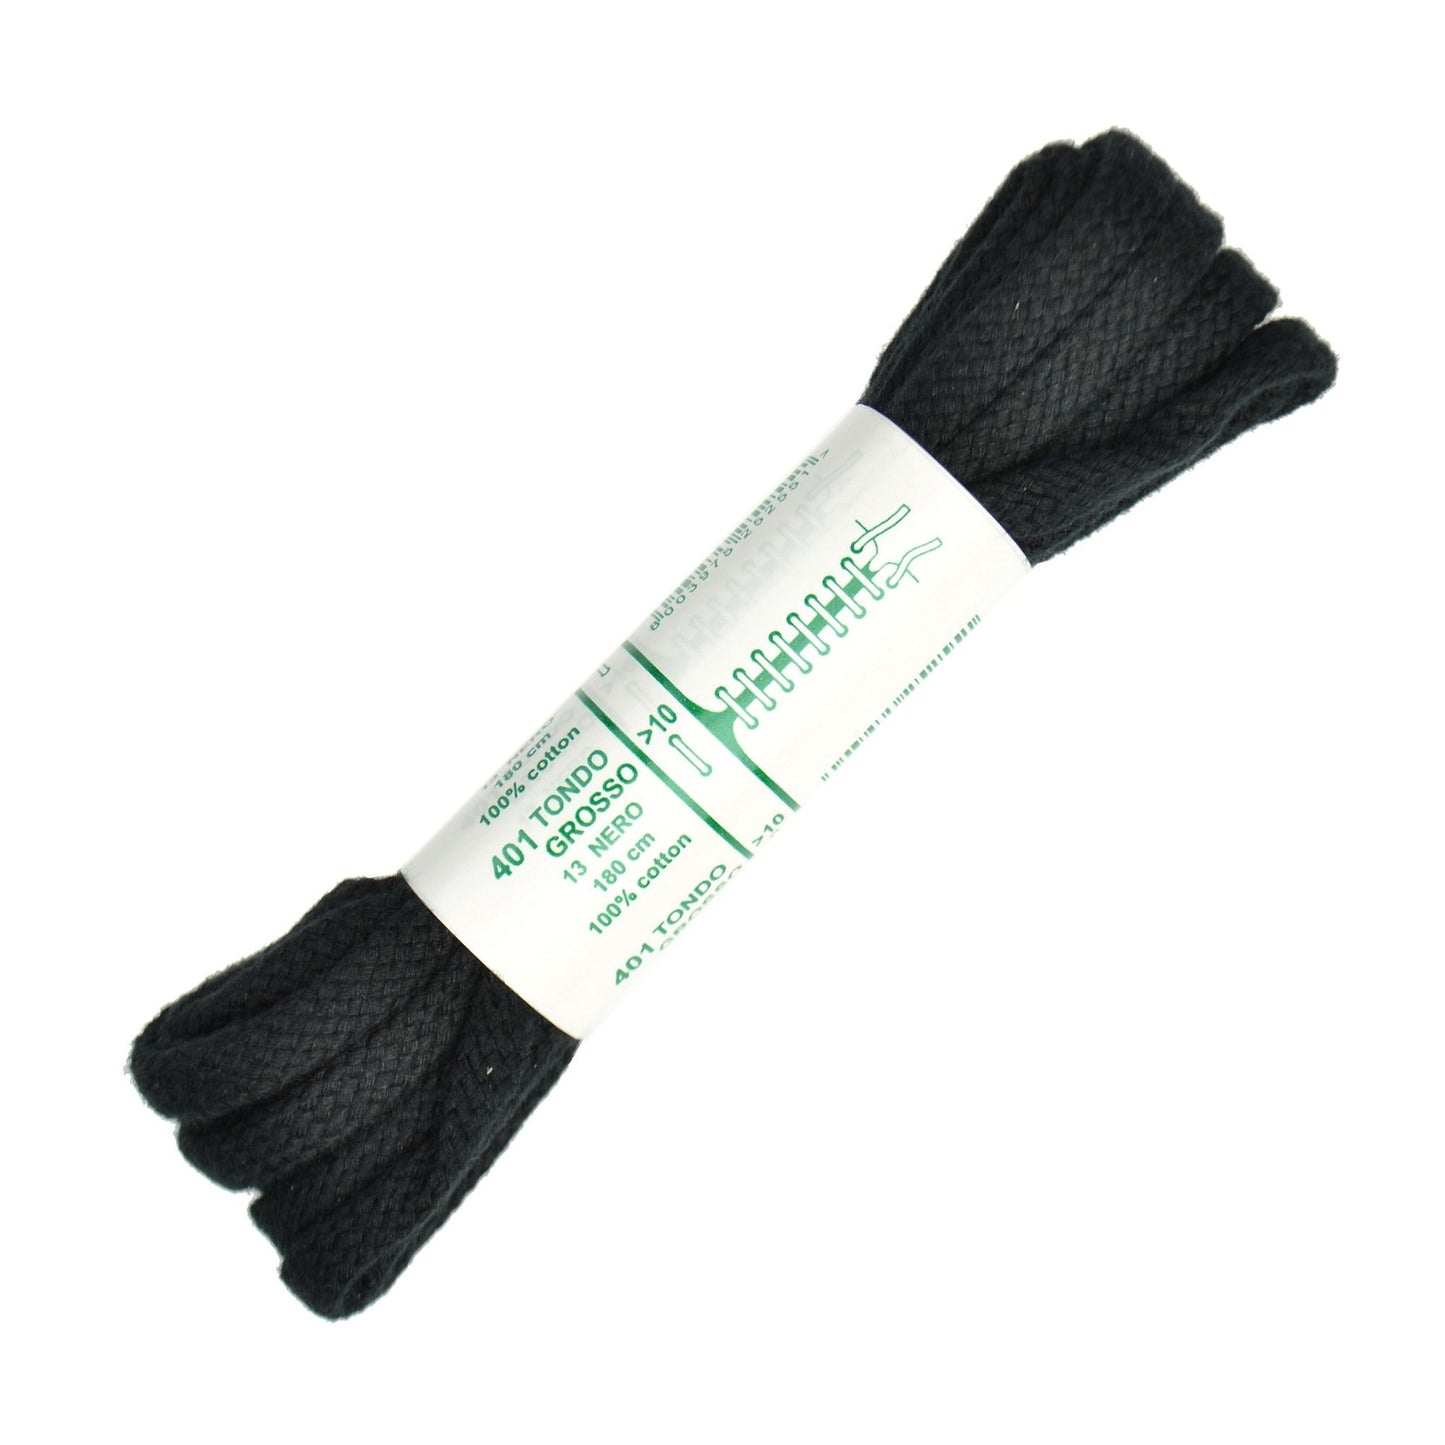 180cm Premium Cord Shoe Laces - Black 6mm